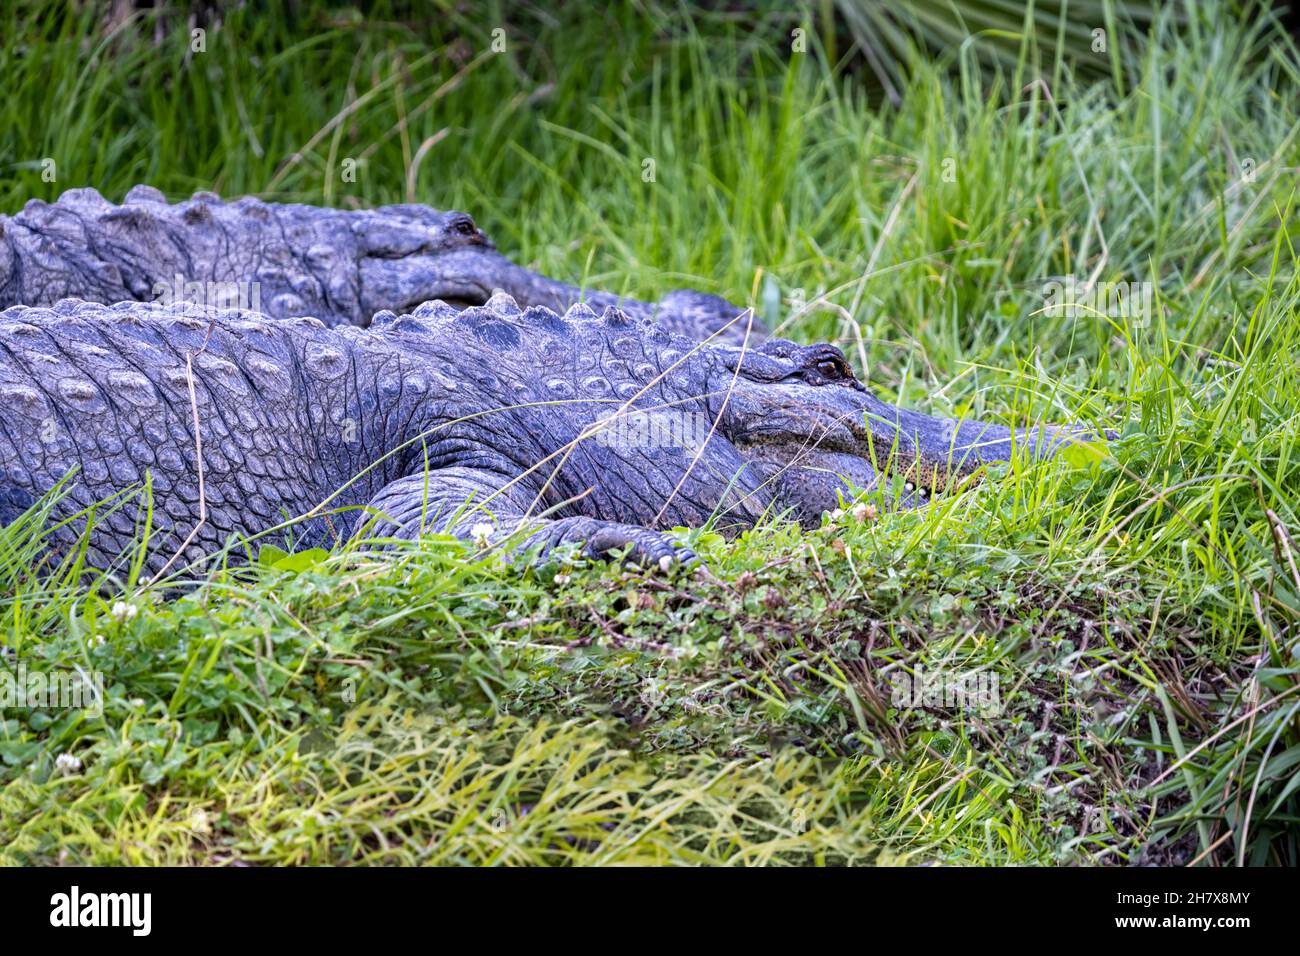 Deux alligators américains qui se trouvent dans une grande herbe verte. Banque D'Images